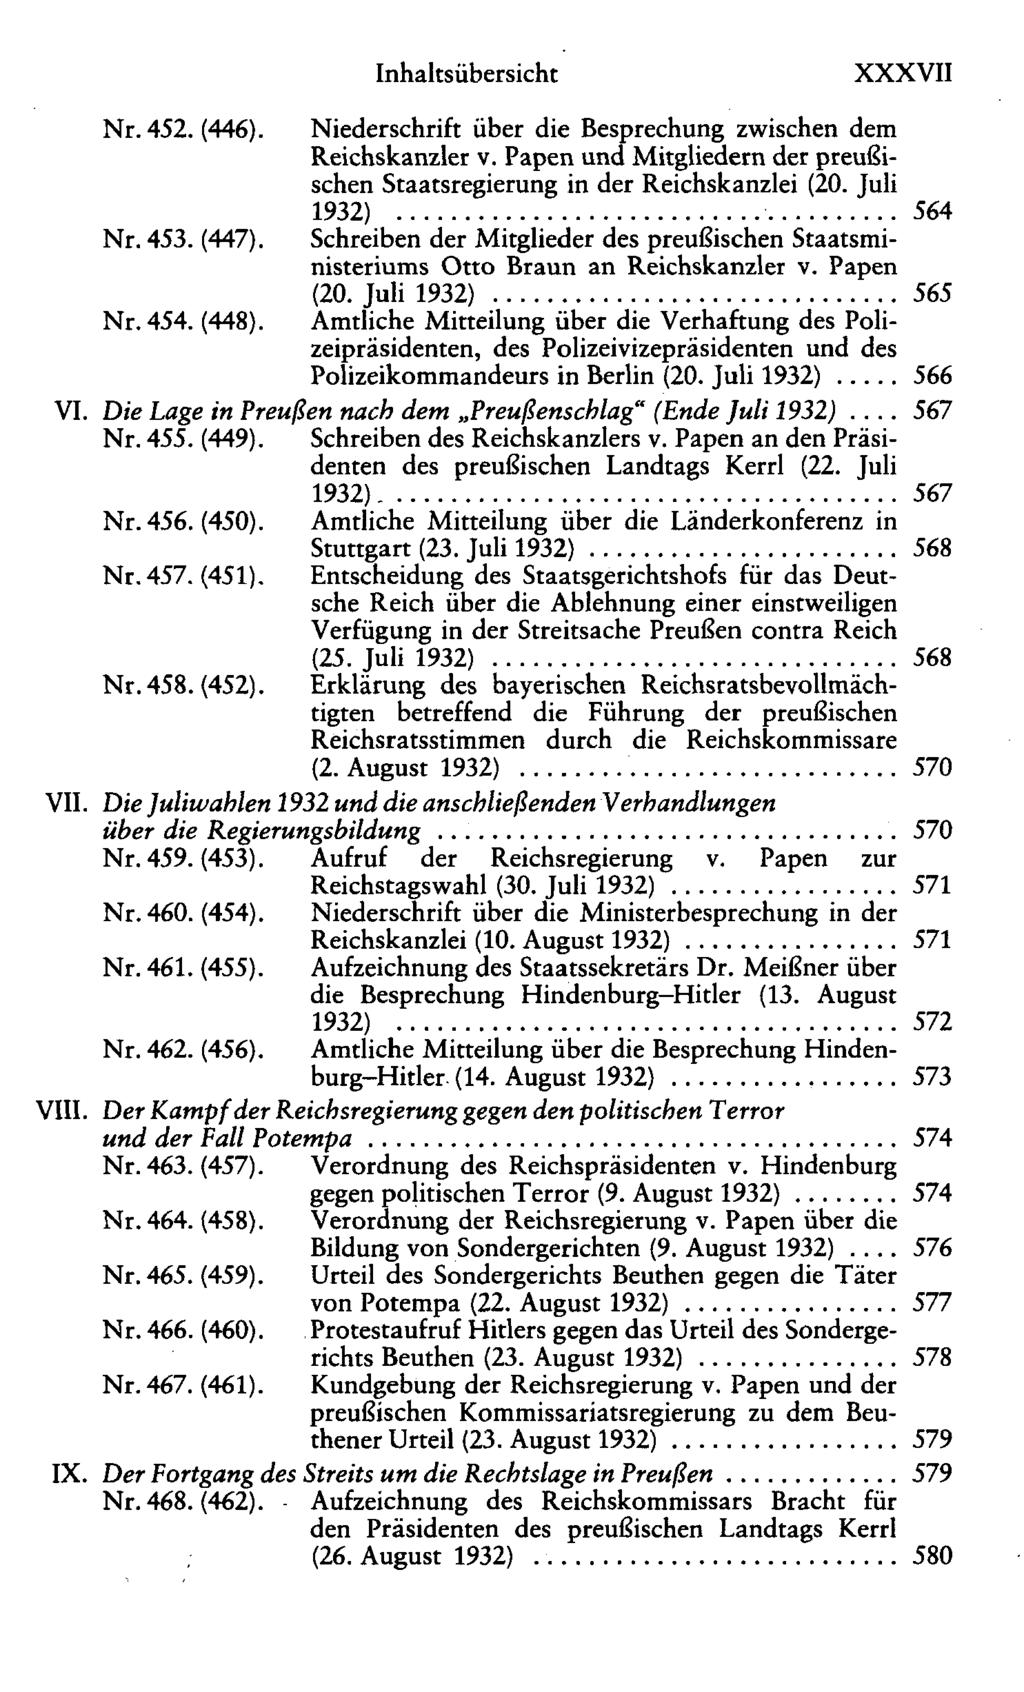 XXXVII Nr. 452. (446). Niederschrift über die Besprechung zwischen dem Reichskanzler v. Papen und Mitgliedern der preußischen Staatsregierung in der Reichskanzlei (20. Juli 1932) 564 Nr. 453. (447).